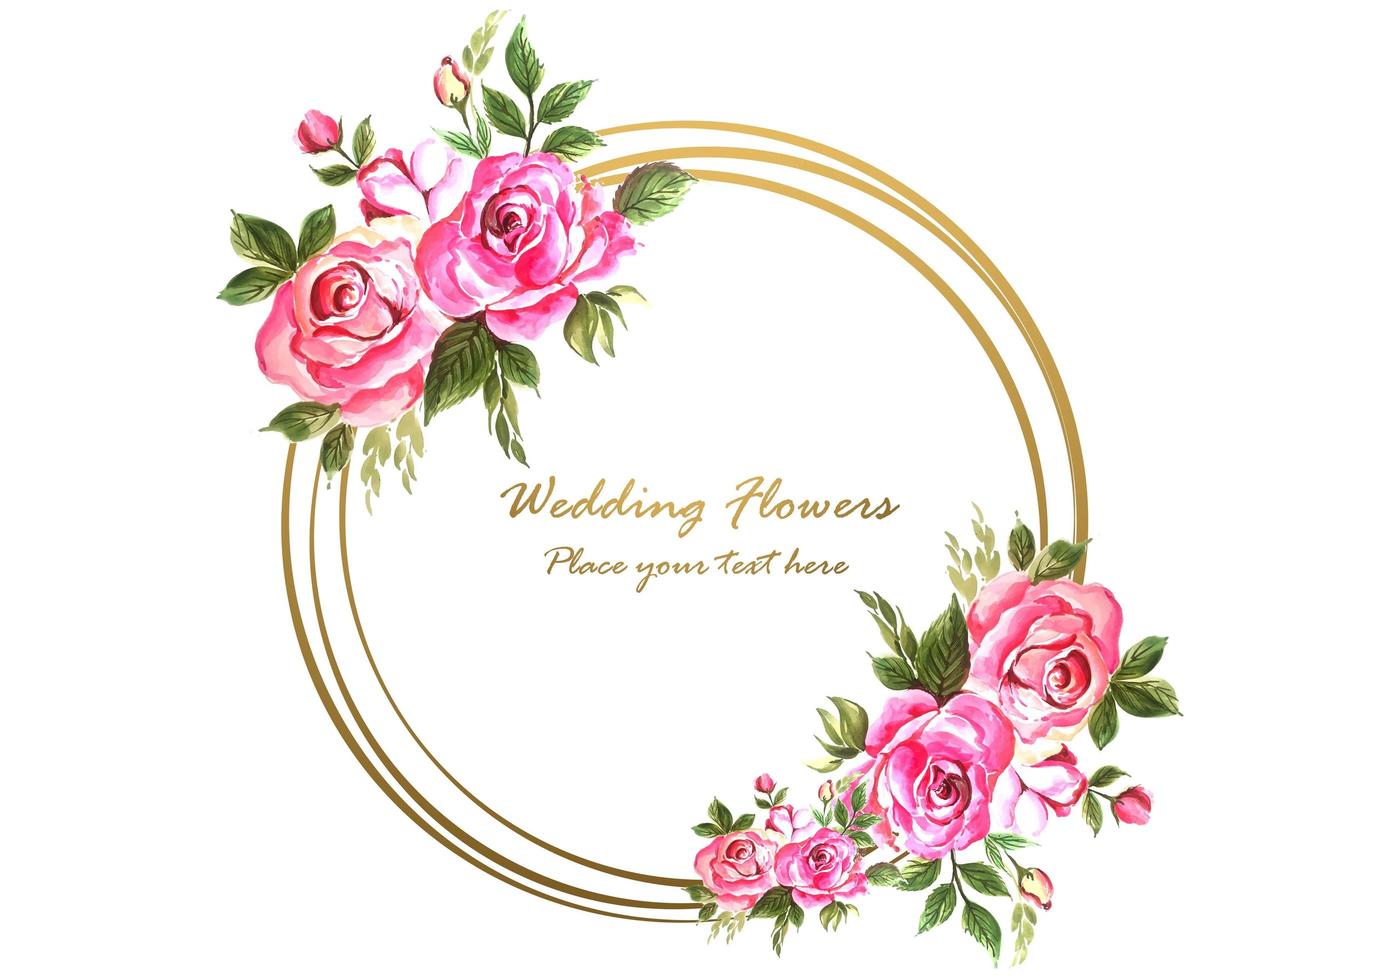 Aniversário de casamento decorativo com moldura floral circular para cartão vetor